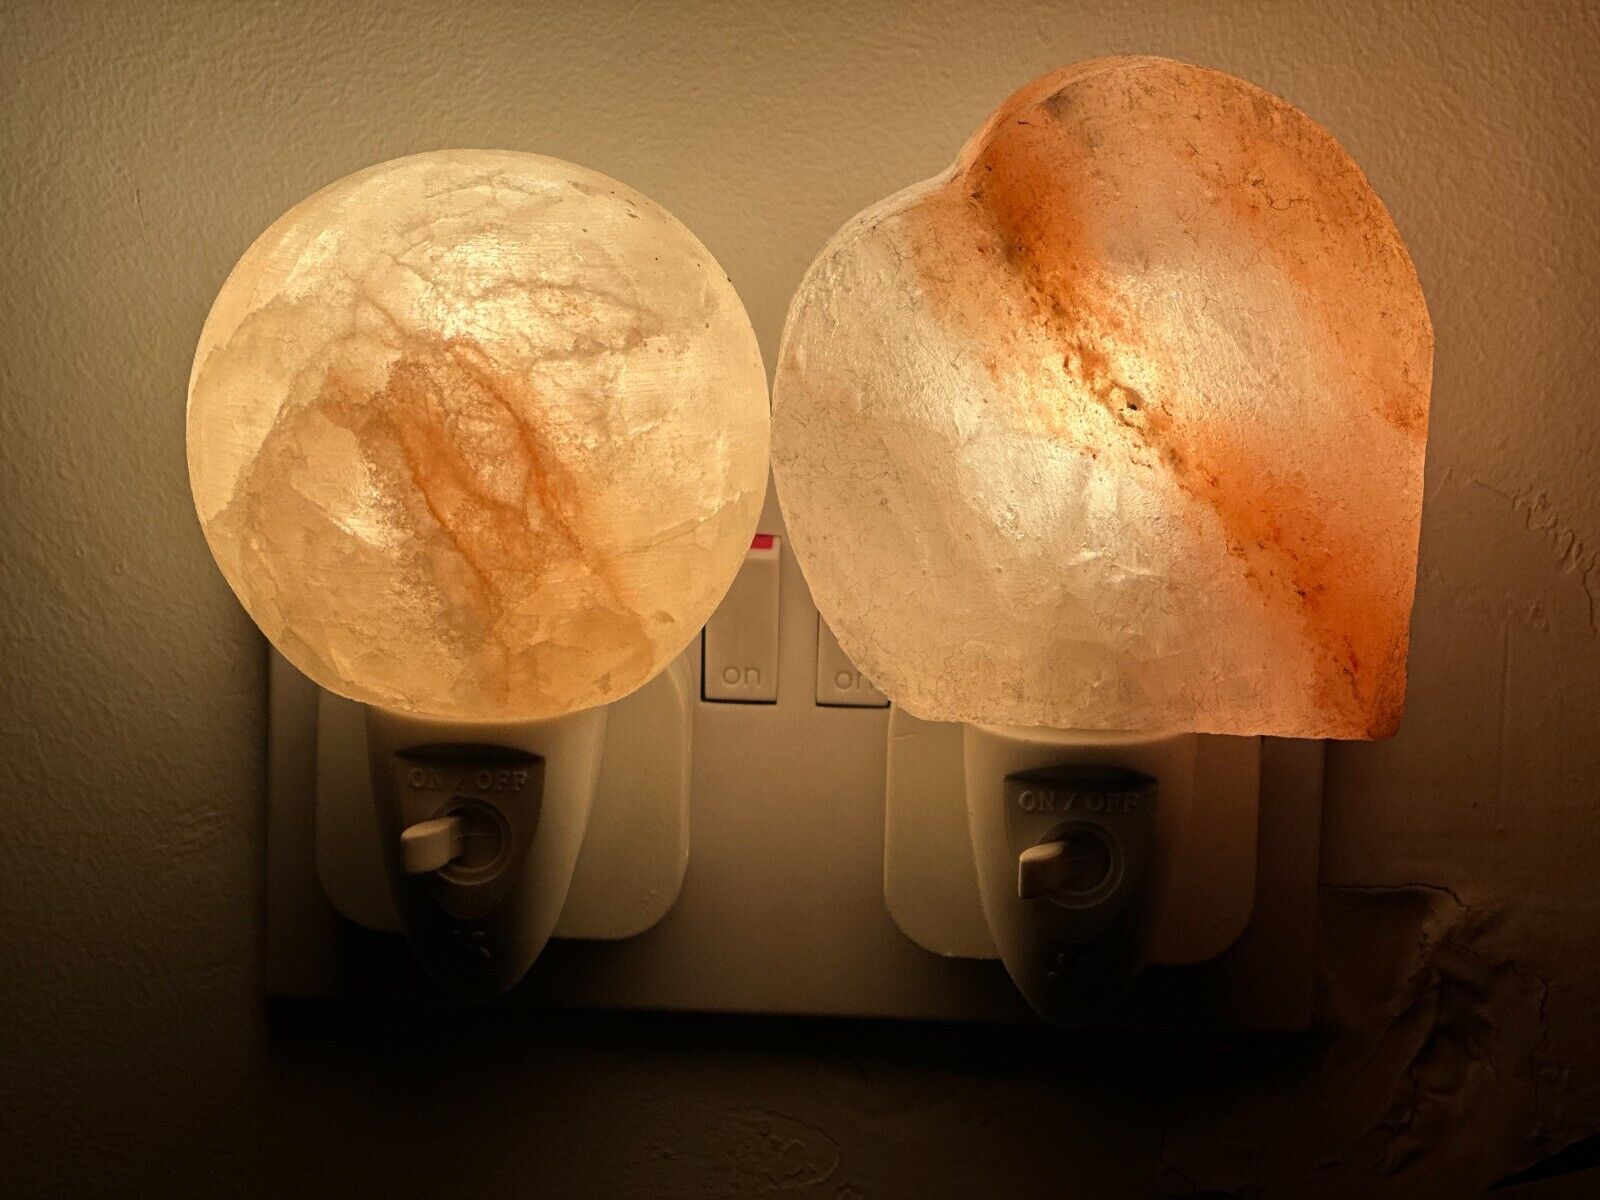 Himalayan Salt Wall Lamp Plug in Night Light Air Purifier Ball , Hart & Natural